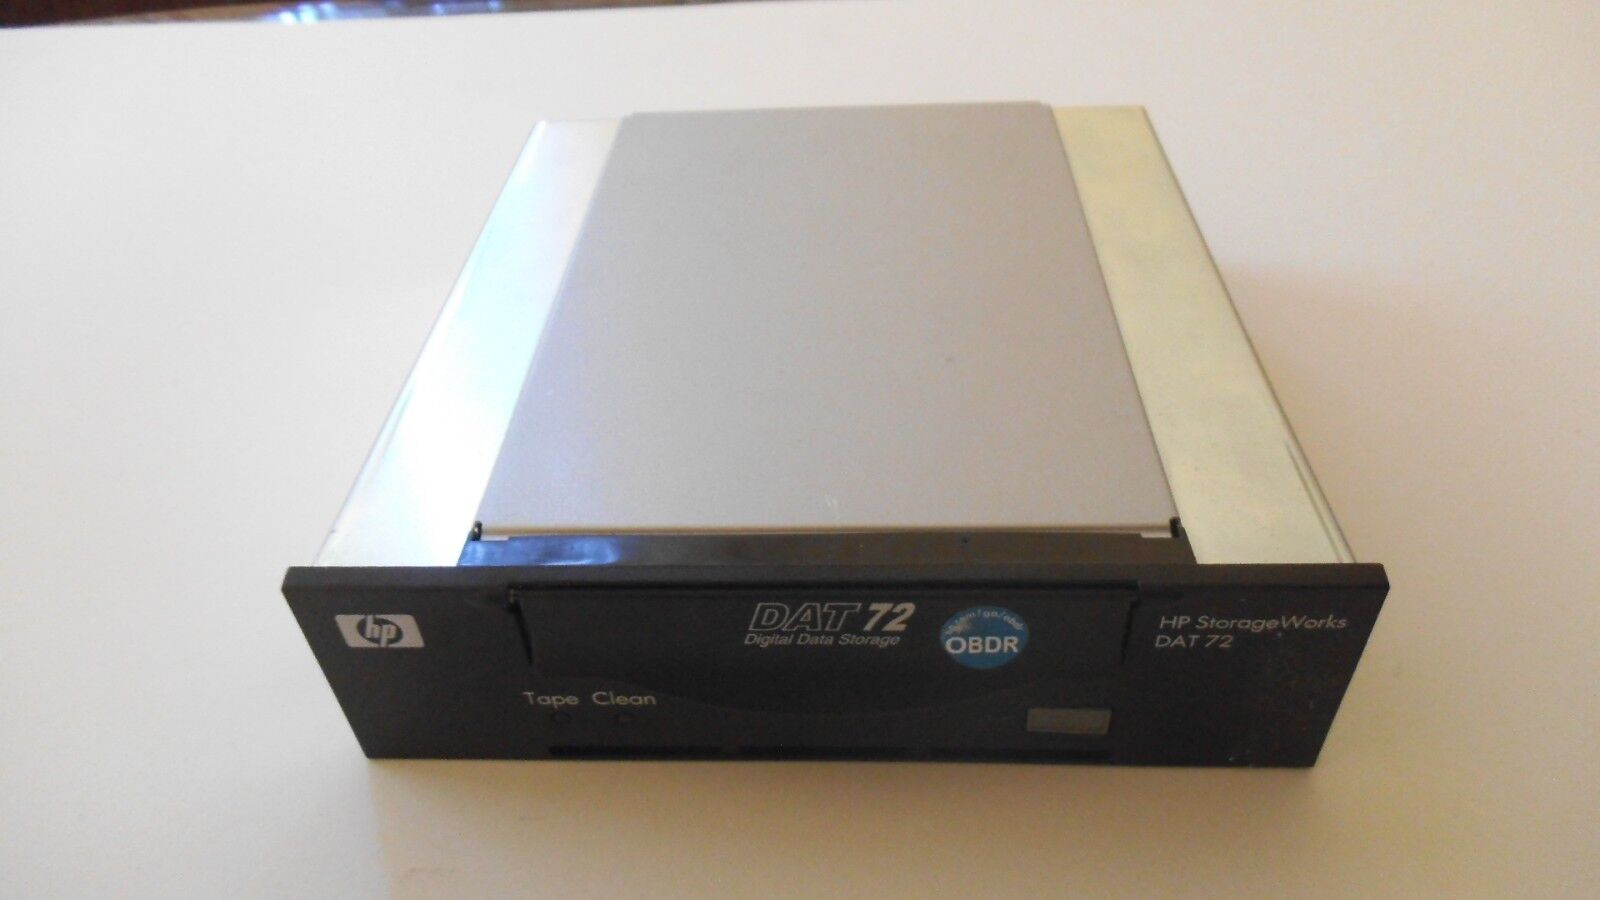 HP STORAGEWORKS DAT72 Q1522B Digital Storage Internal Tape Drive